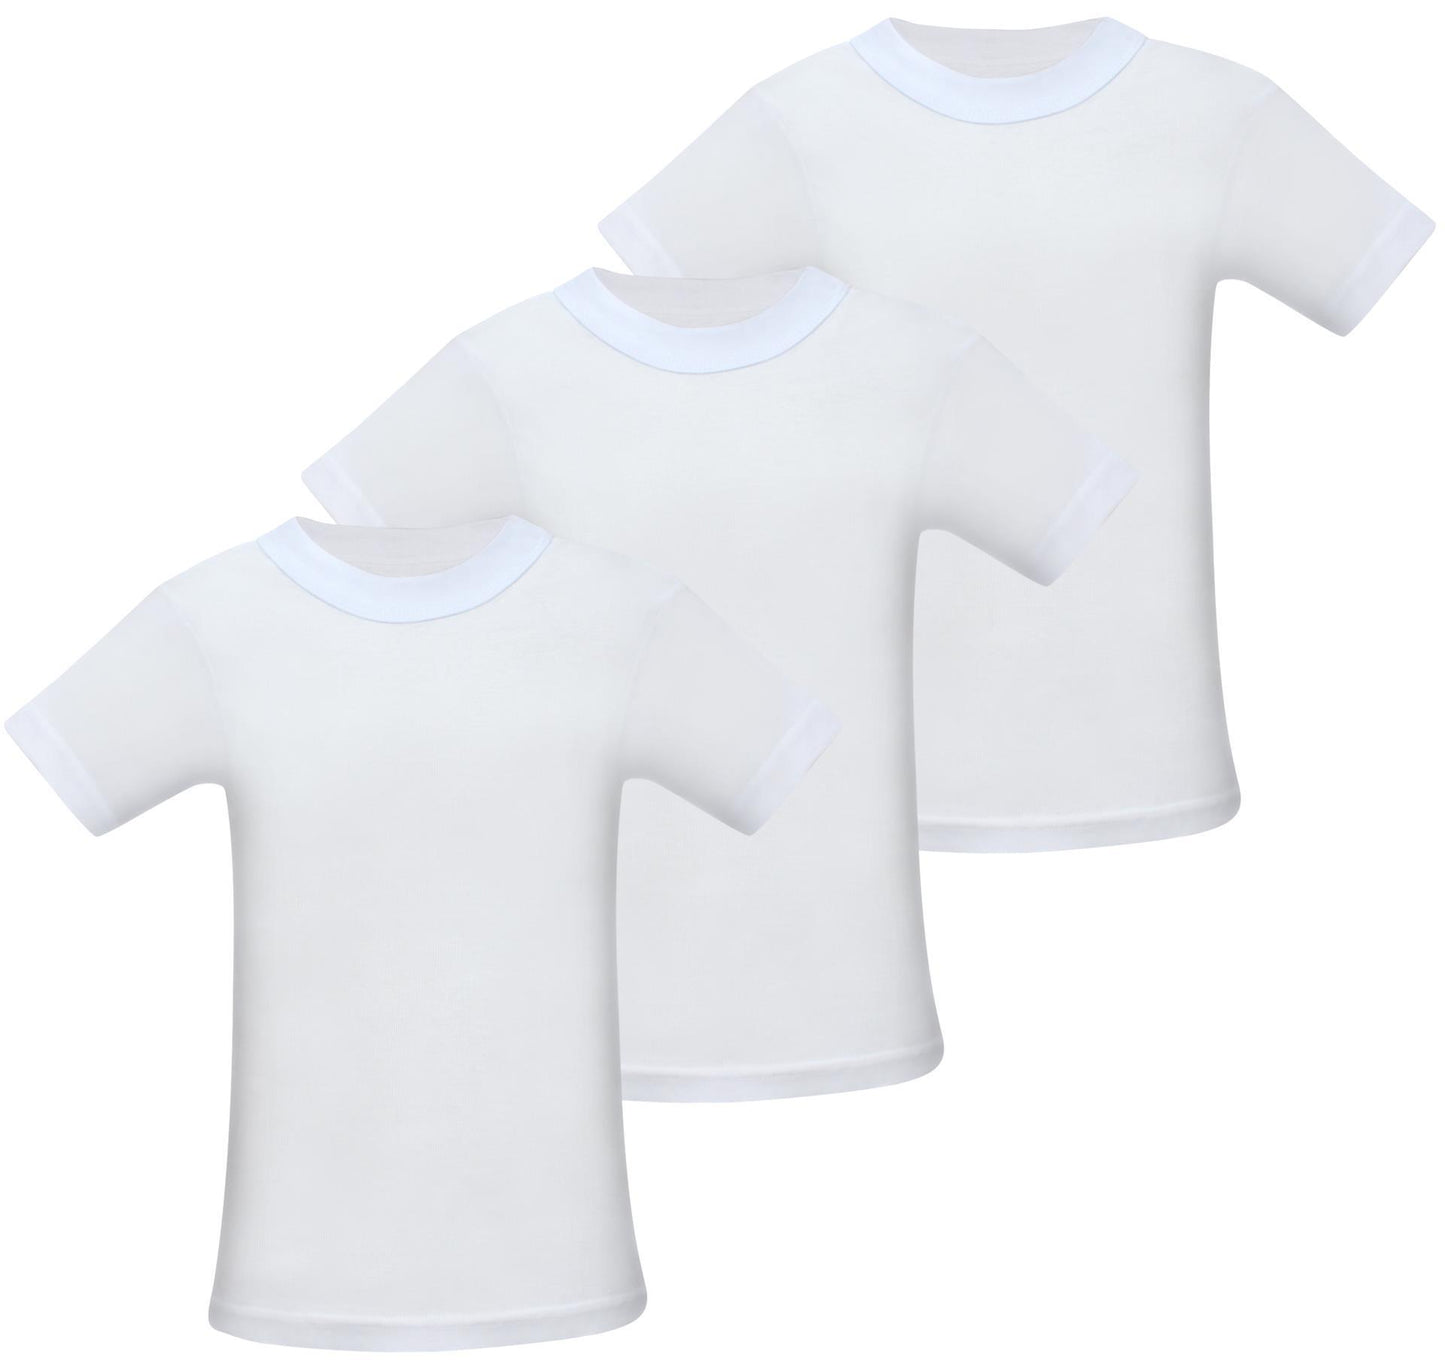 Jungen & Mädchen Unterhemden Kurzarm Shirt - T-Shirt 100% Baumwolle Unterwäsche